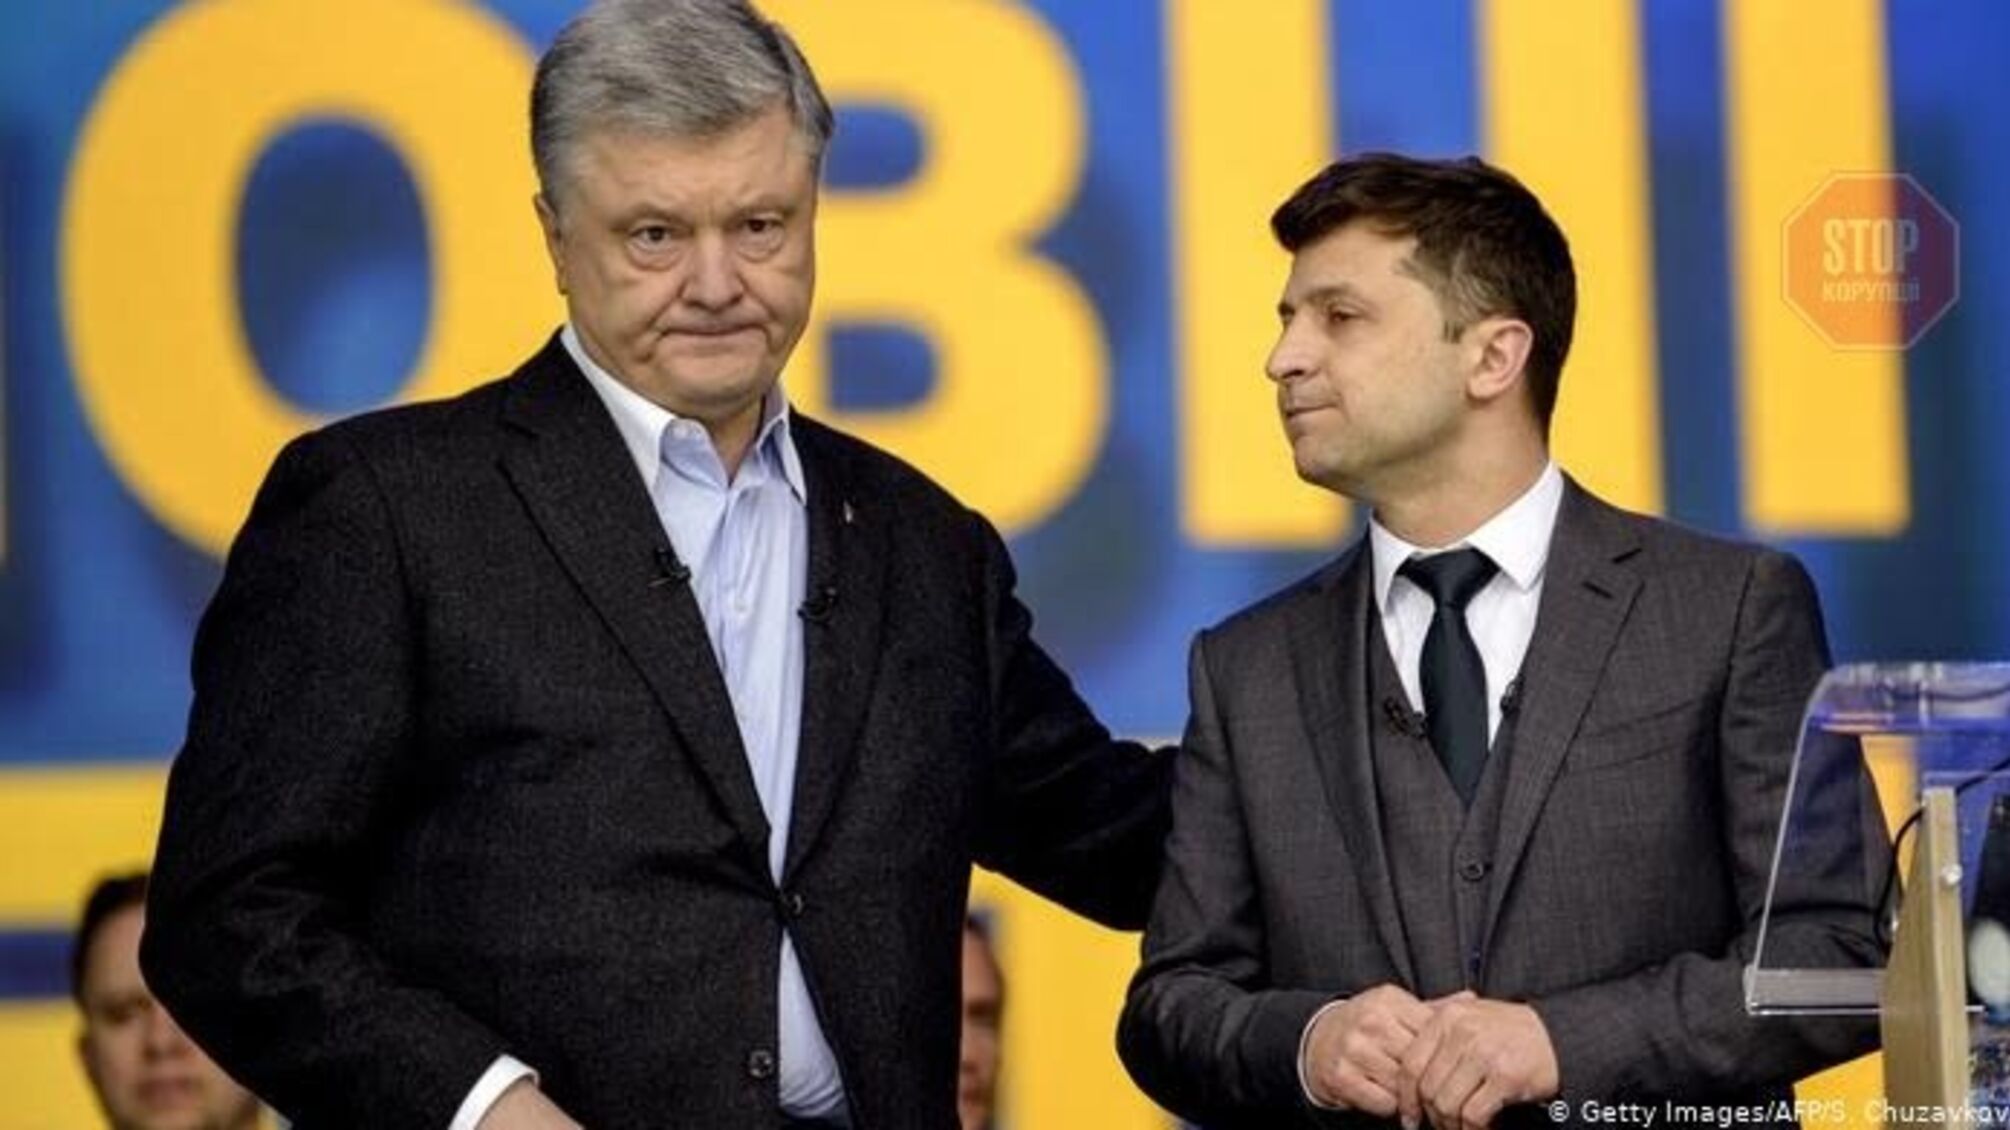 Порошенко почти догнал Зеленского в президентском рейтинге - опрос